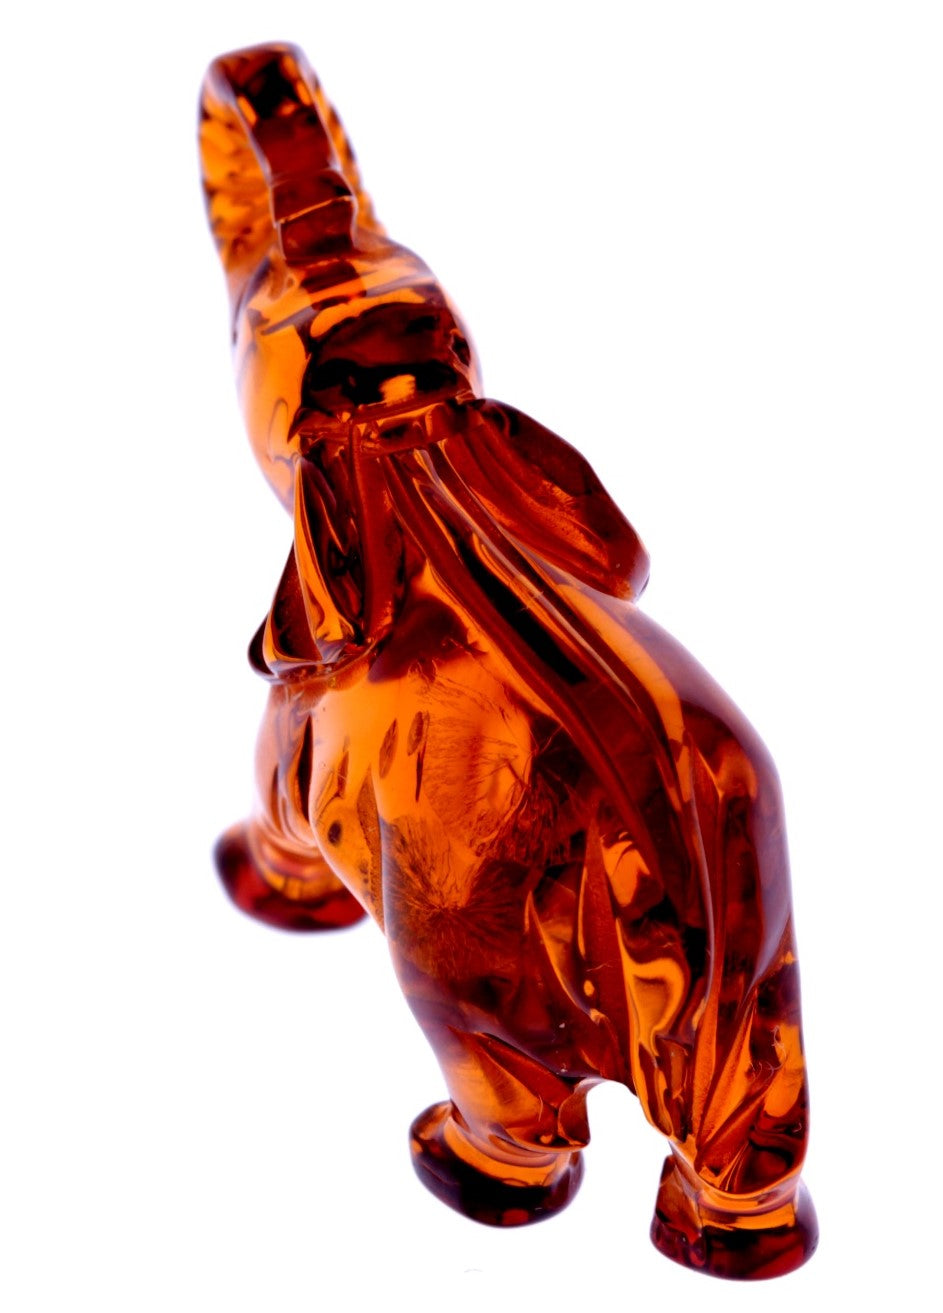 Figurine Superb Quality Handmade Natural Carved Elephant made of Genuine Baltic Amber - CRV68